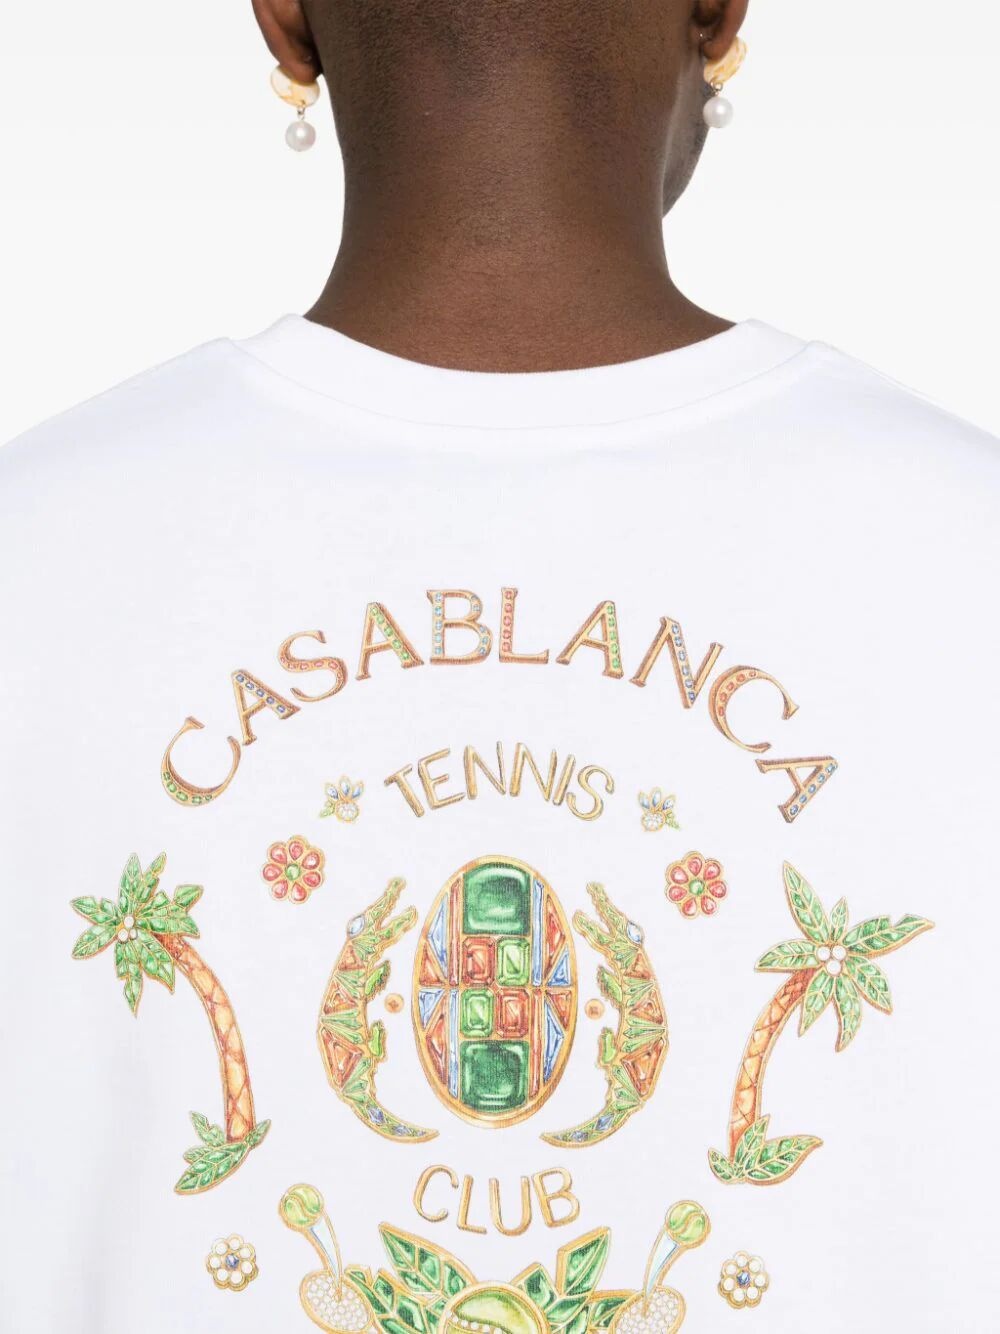 Joyaux d'afrique tennis club t-shirt - 5